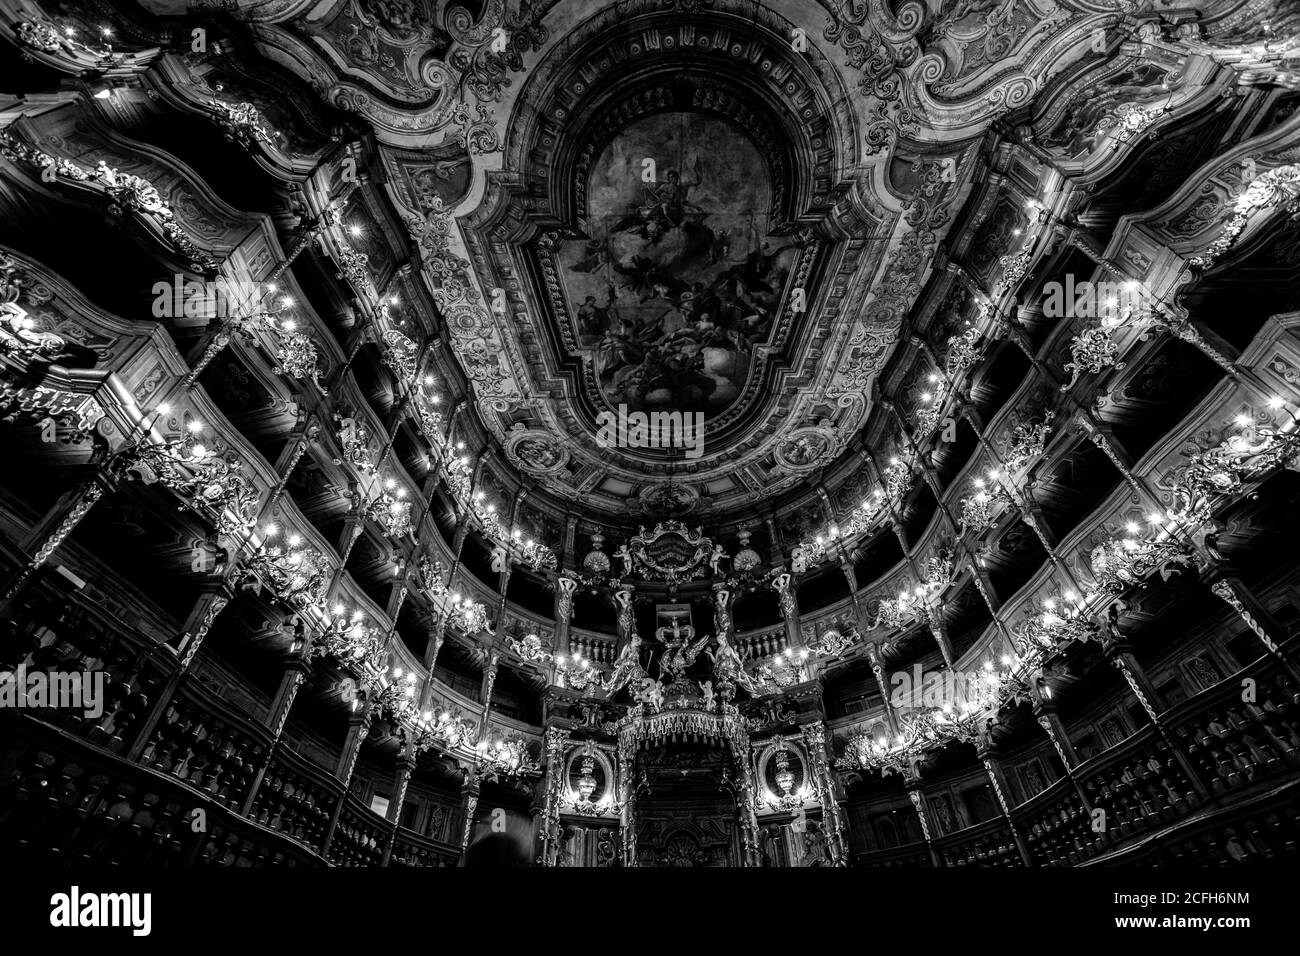 Teatro dell'opera Margravial Bayreuth Germania in stile barocco, patrimonio dell'umanità dell'UNESCO elencato ornato metà del diciottesimo secolo costruzione Foto Stock